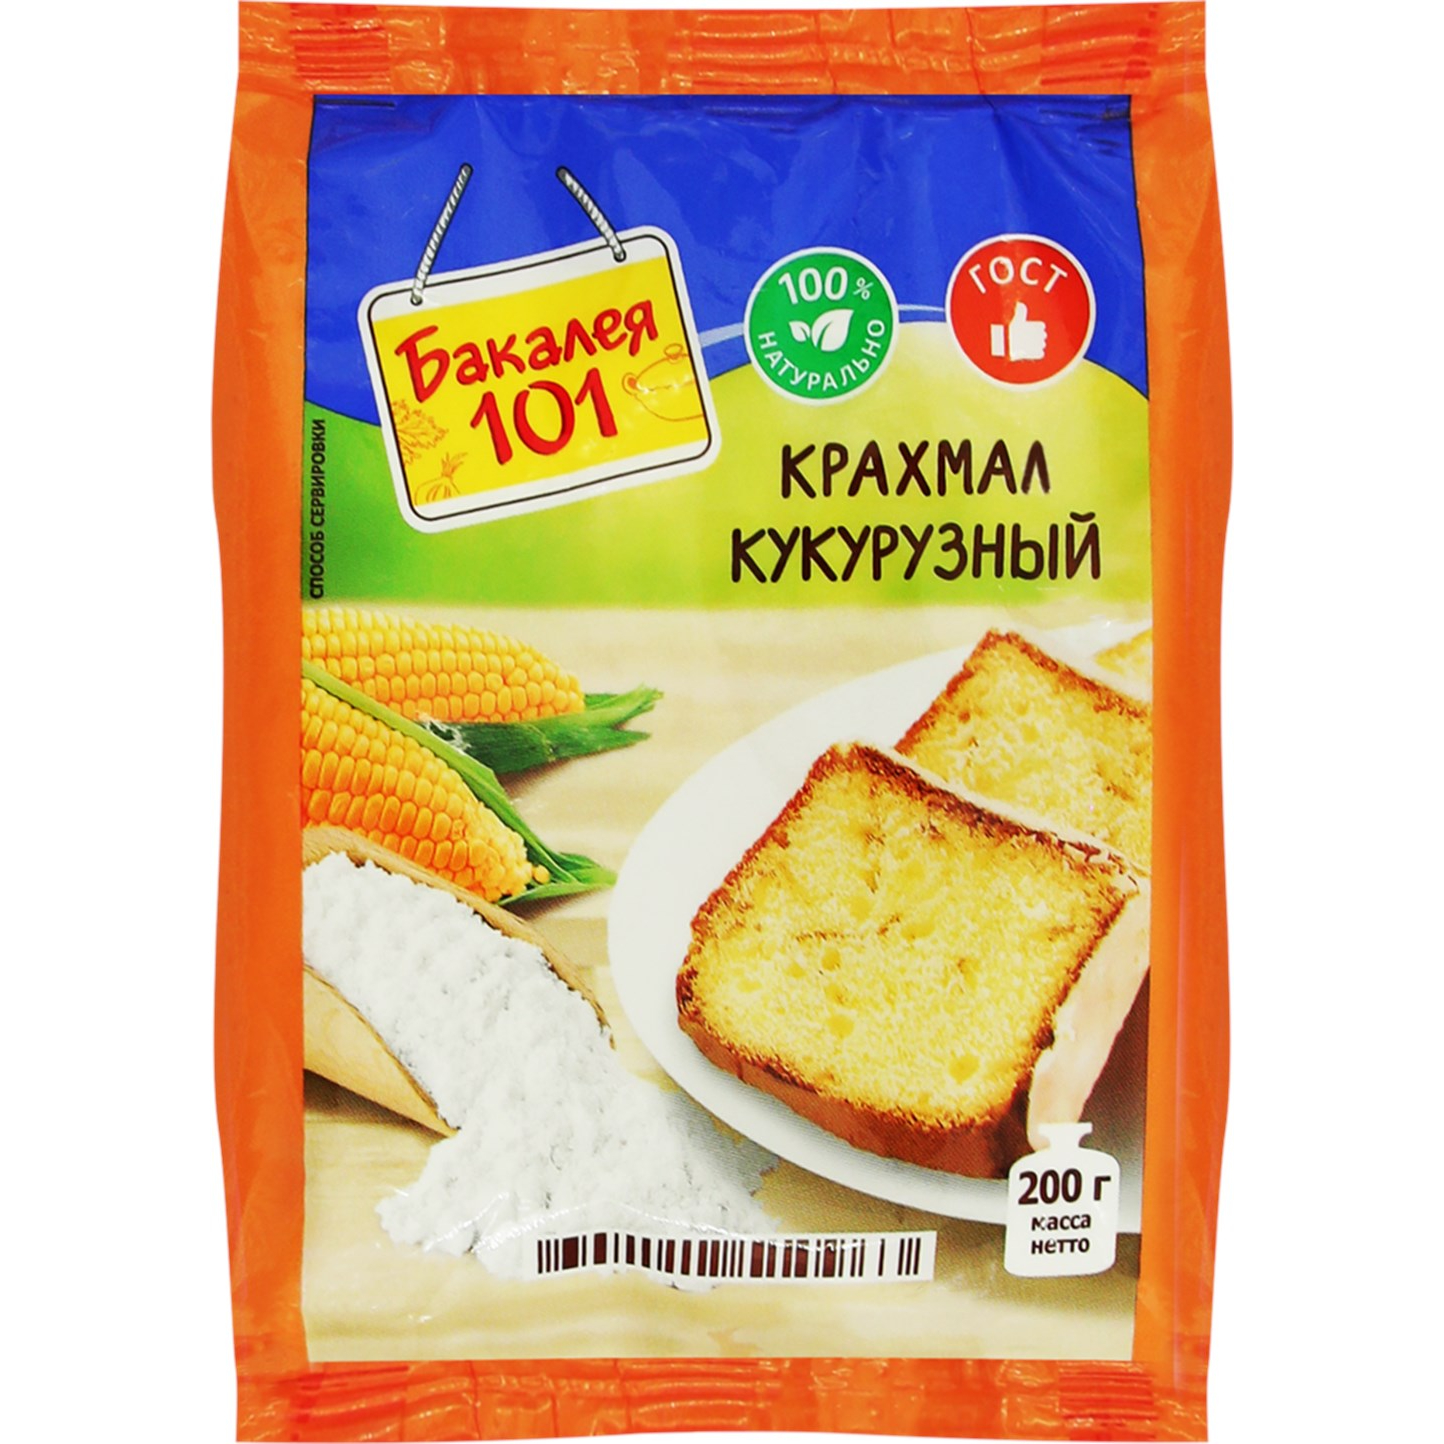 Крахмал кукурузный Русский продукт Бакалея 101 200 г горчичный порошок русский продукт бакалея 101 200 г